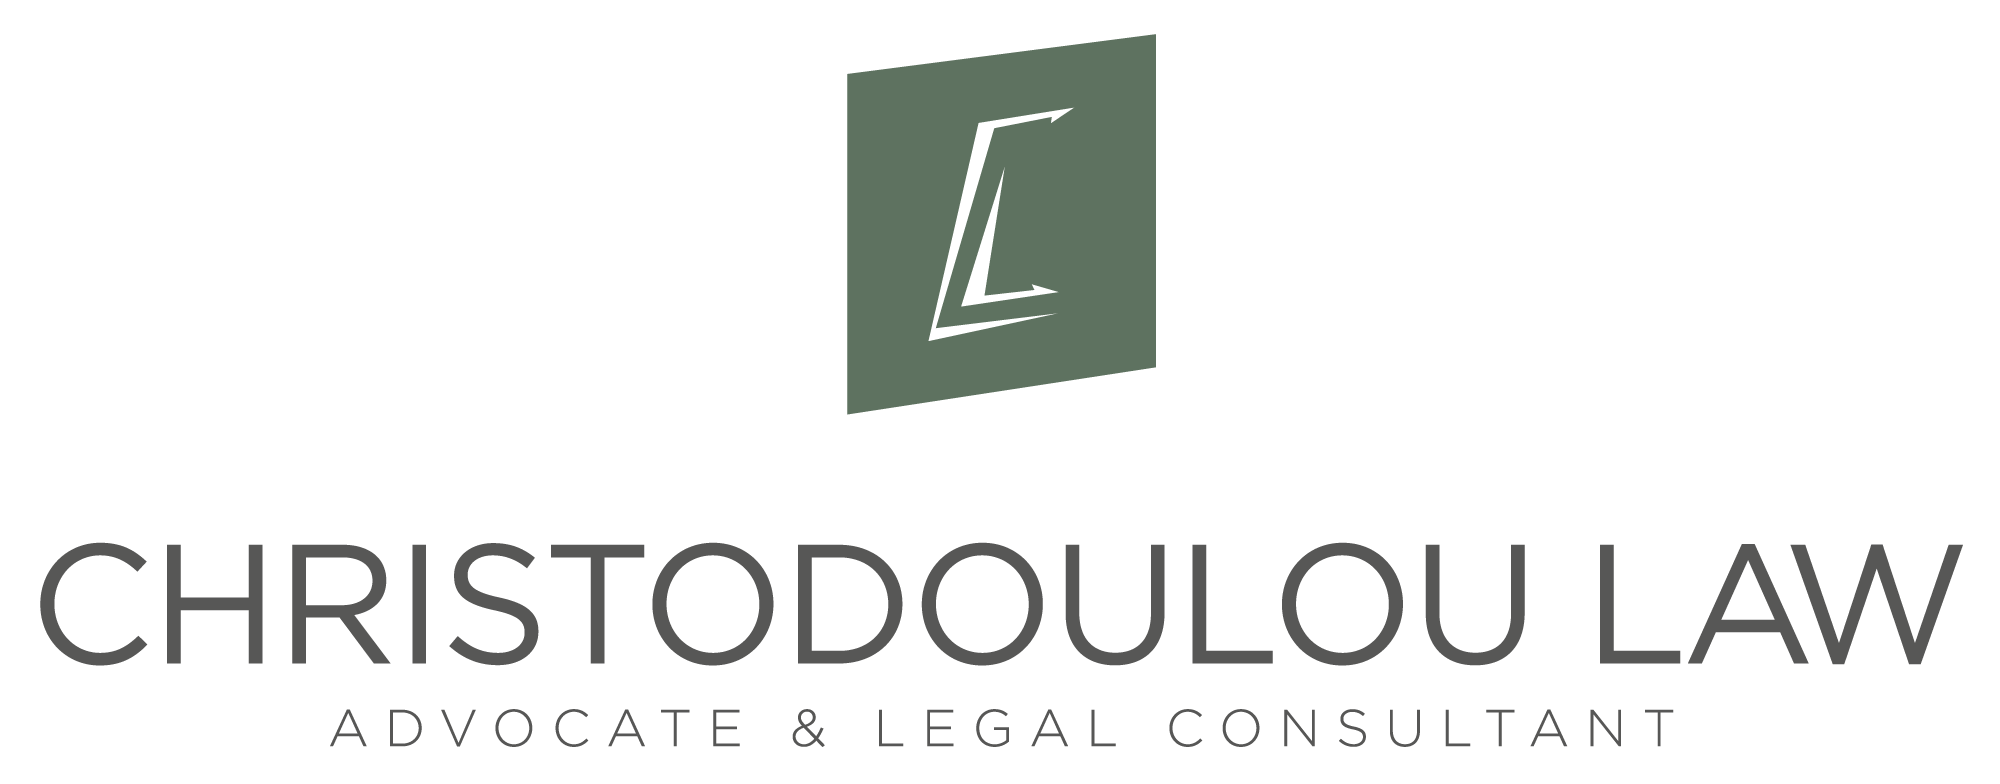 Christodoulou Law Ltd.